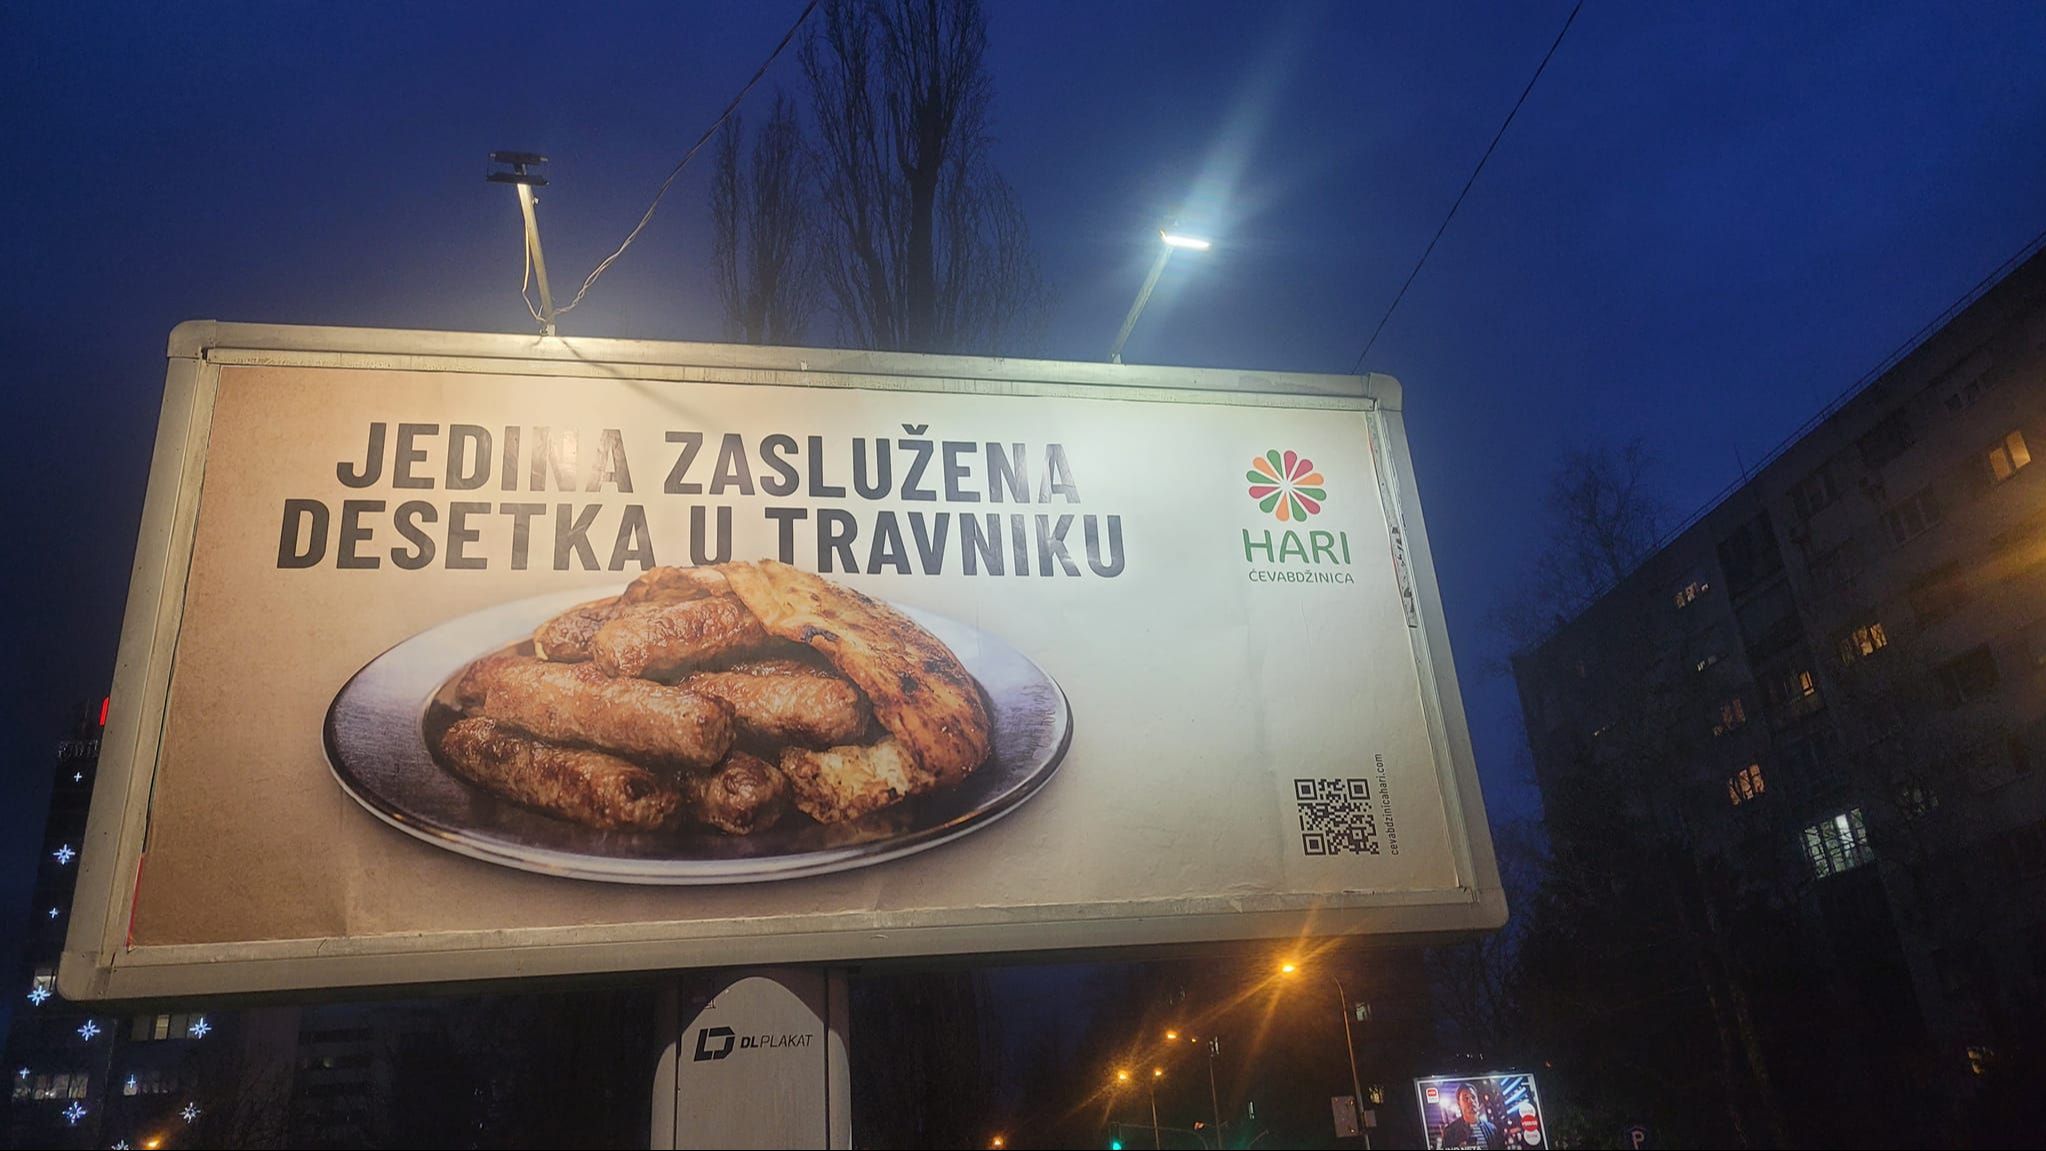 Jedina zaslužena desetka u Travniku": Reklama o ćevapima naljutila studente